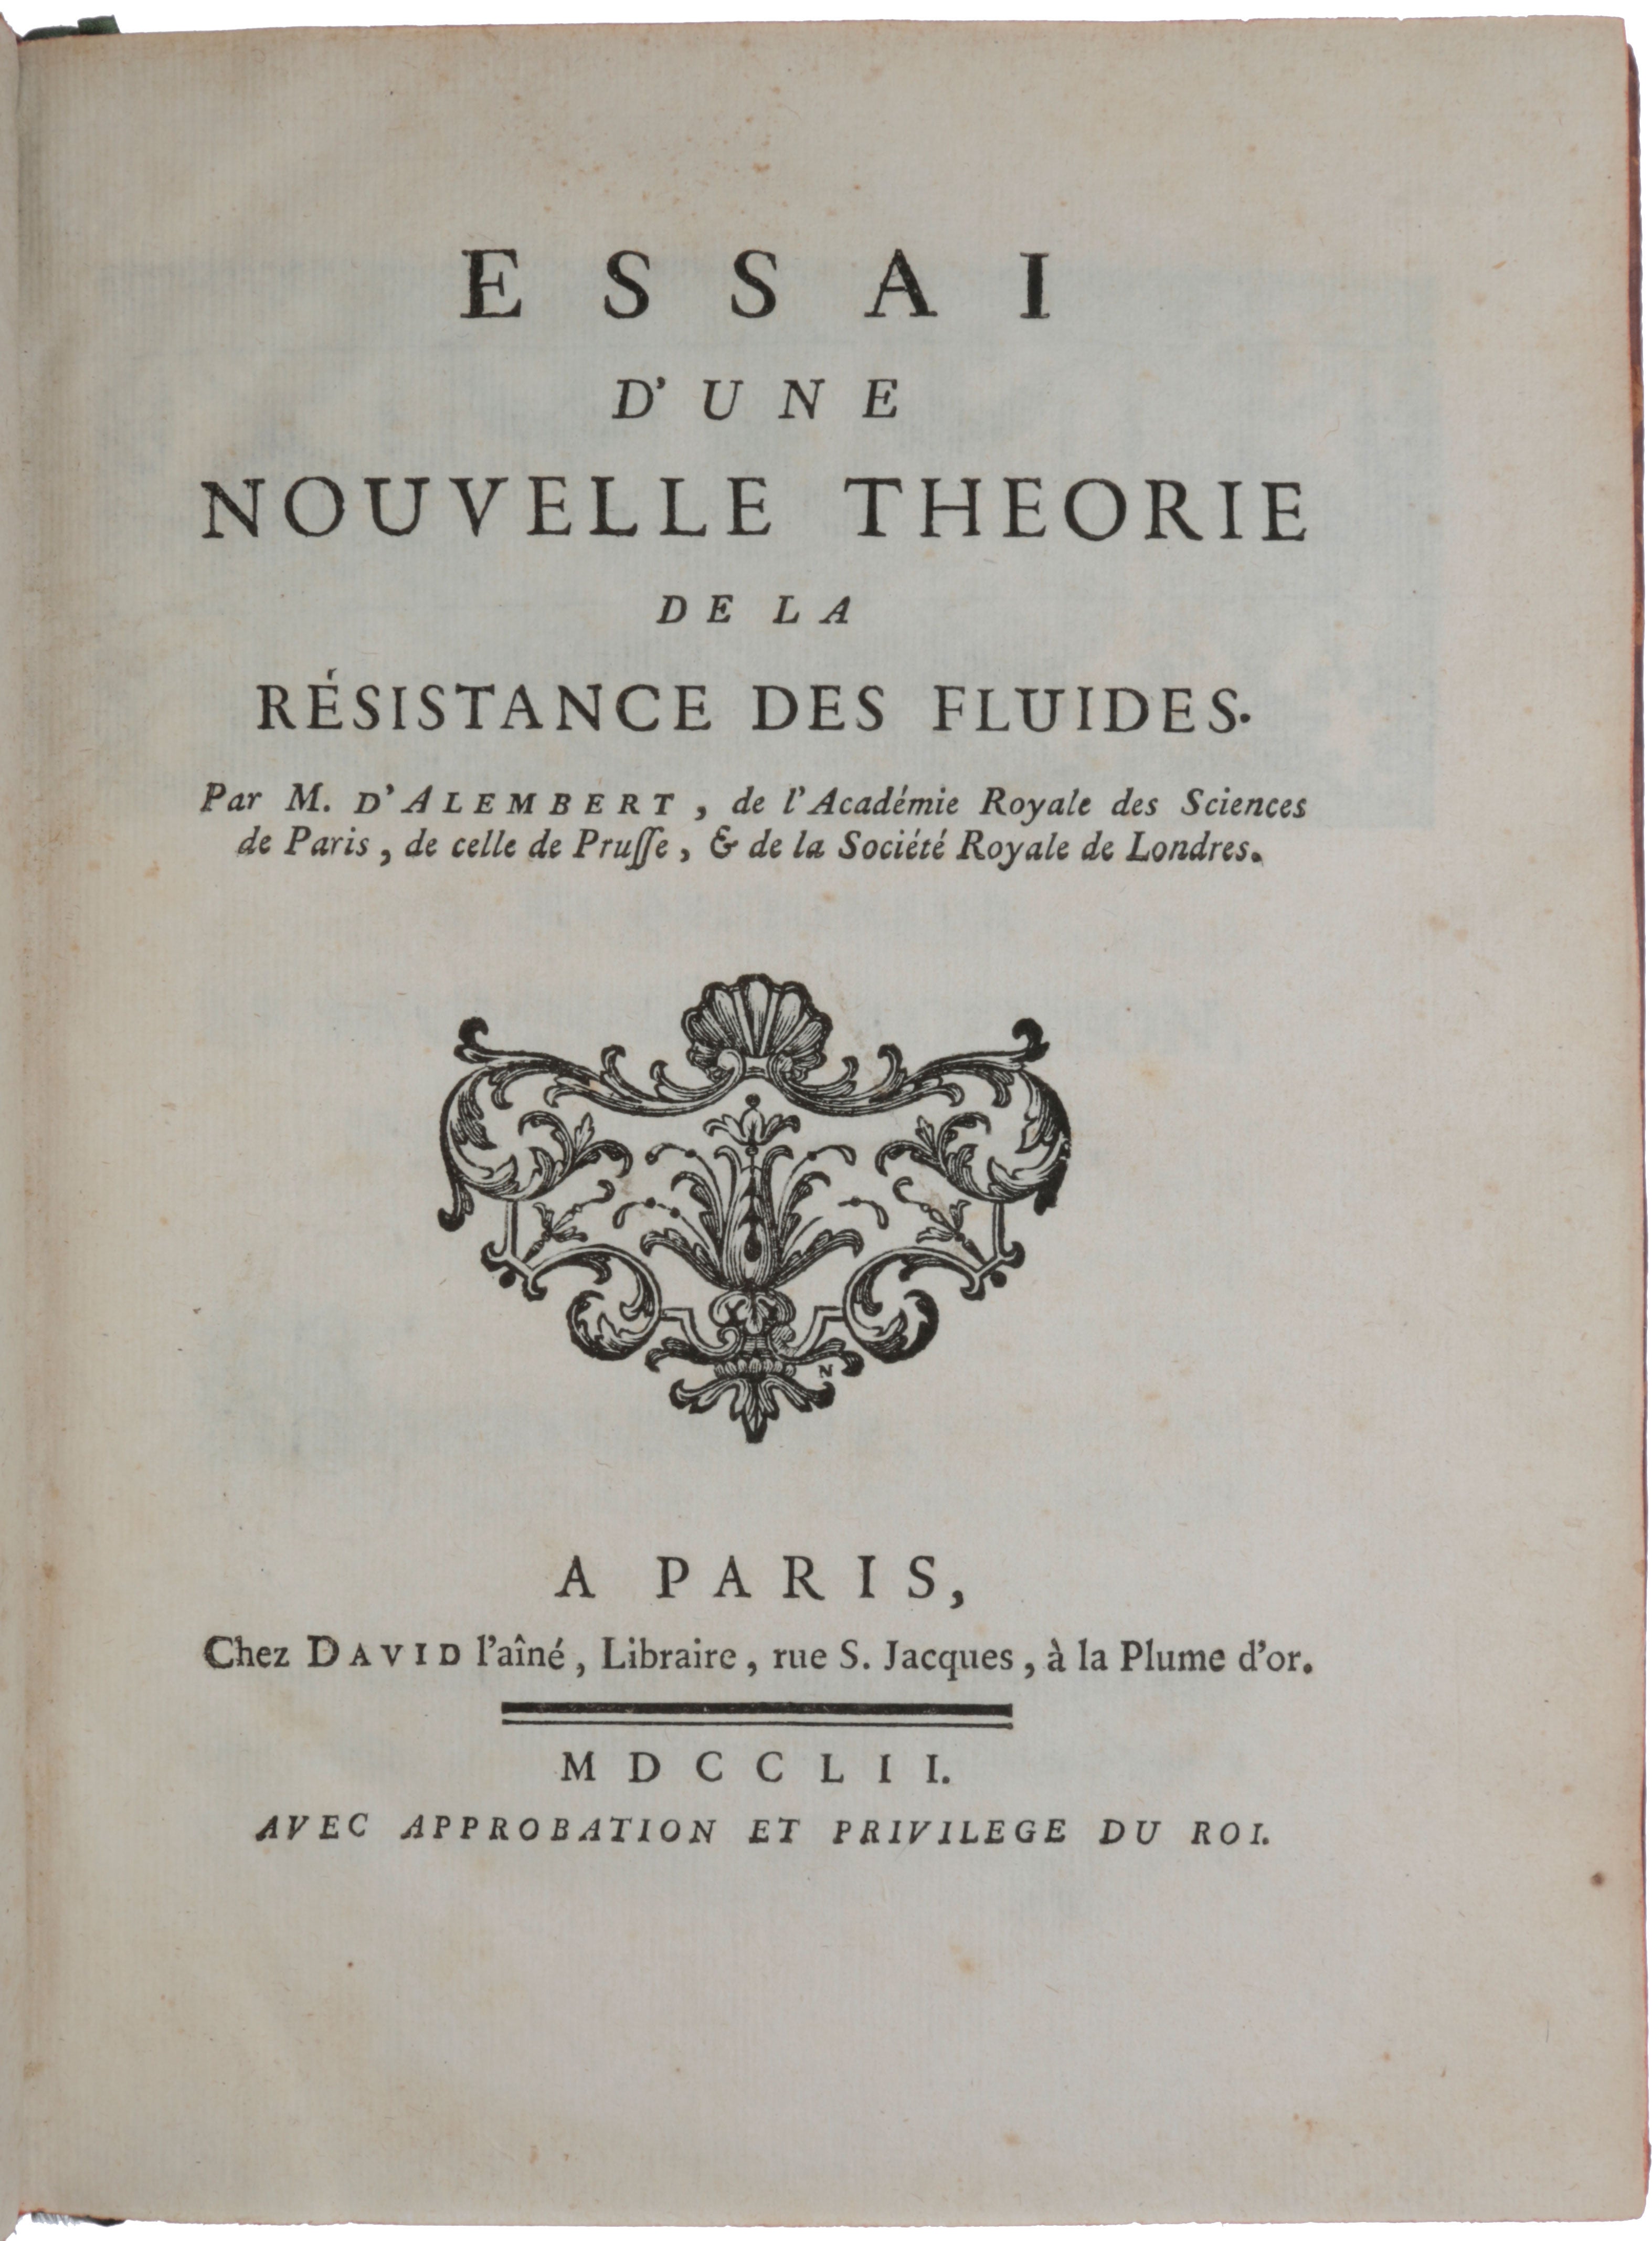 Item #5809 Essai d’une nouvelle théorie de la résistance des fluides. Jean le Rond d’ ALEMBERT.